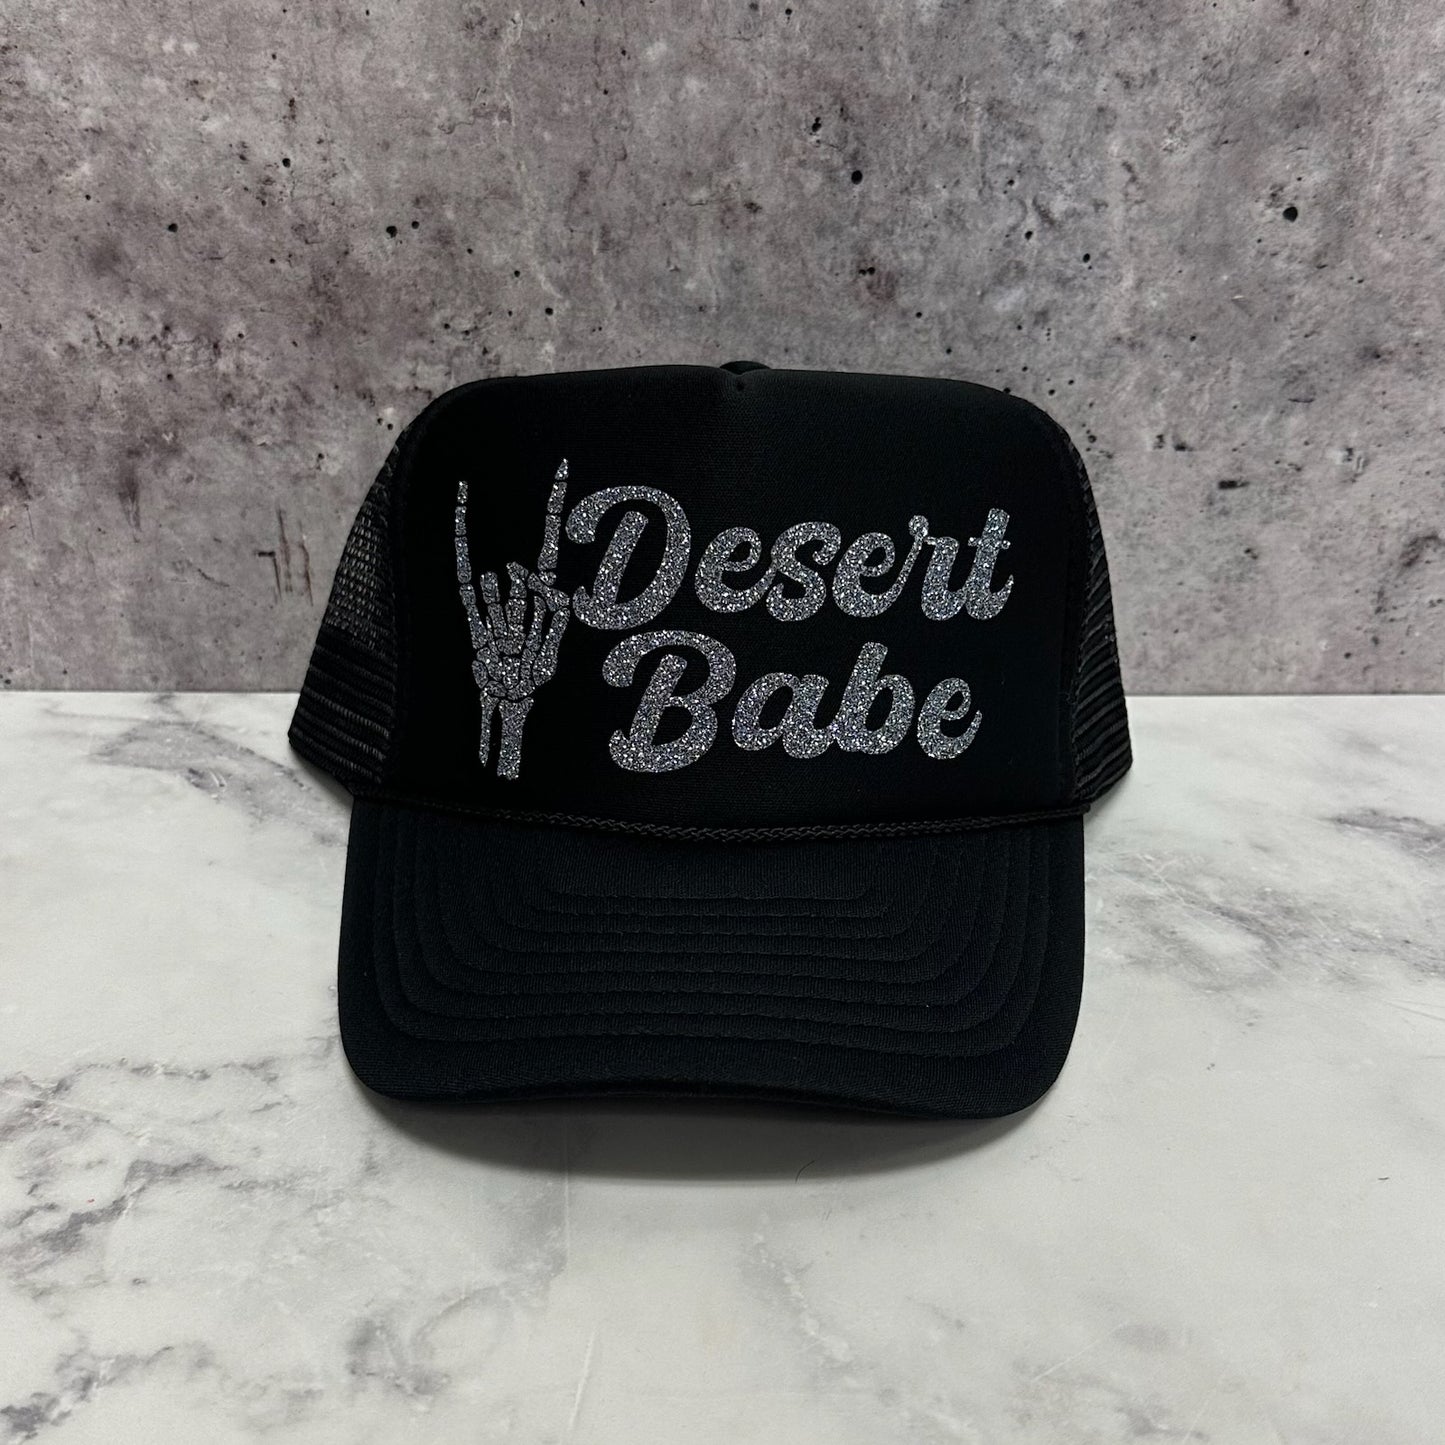 Desert Babe Script Skeleton Hand Trucker Hat